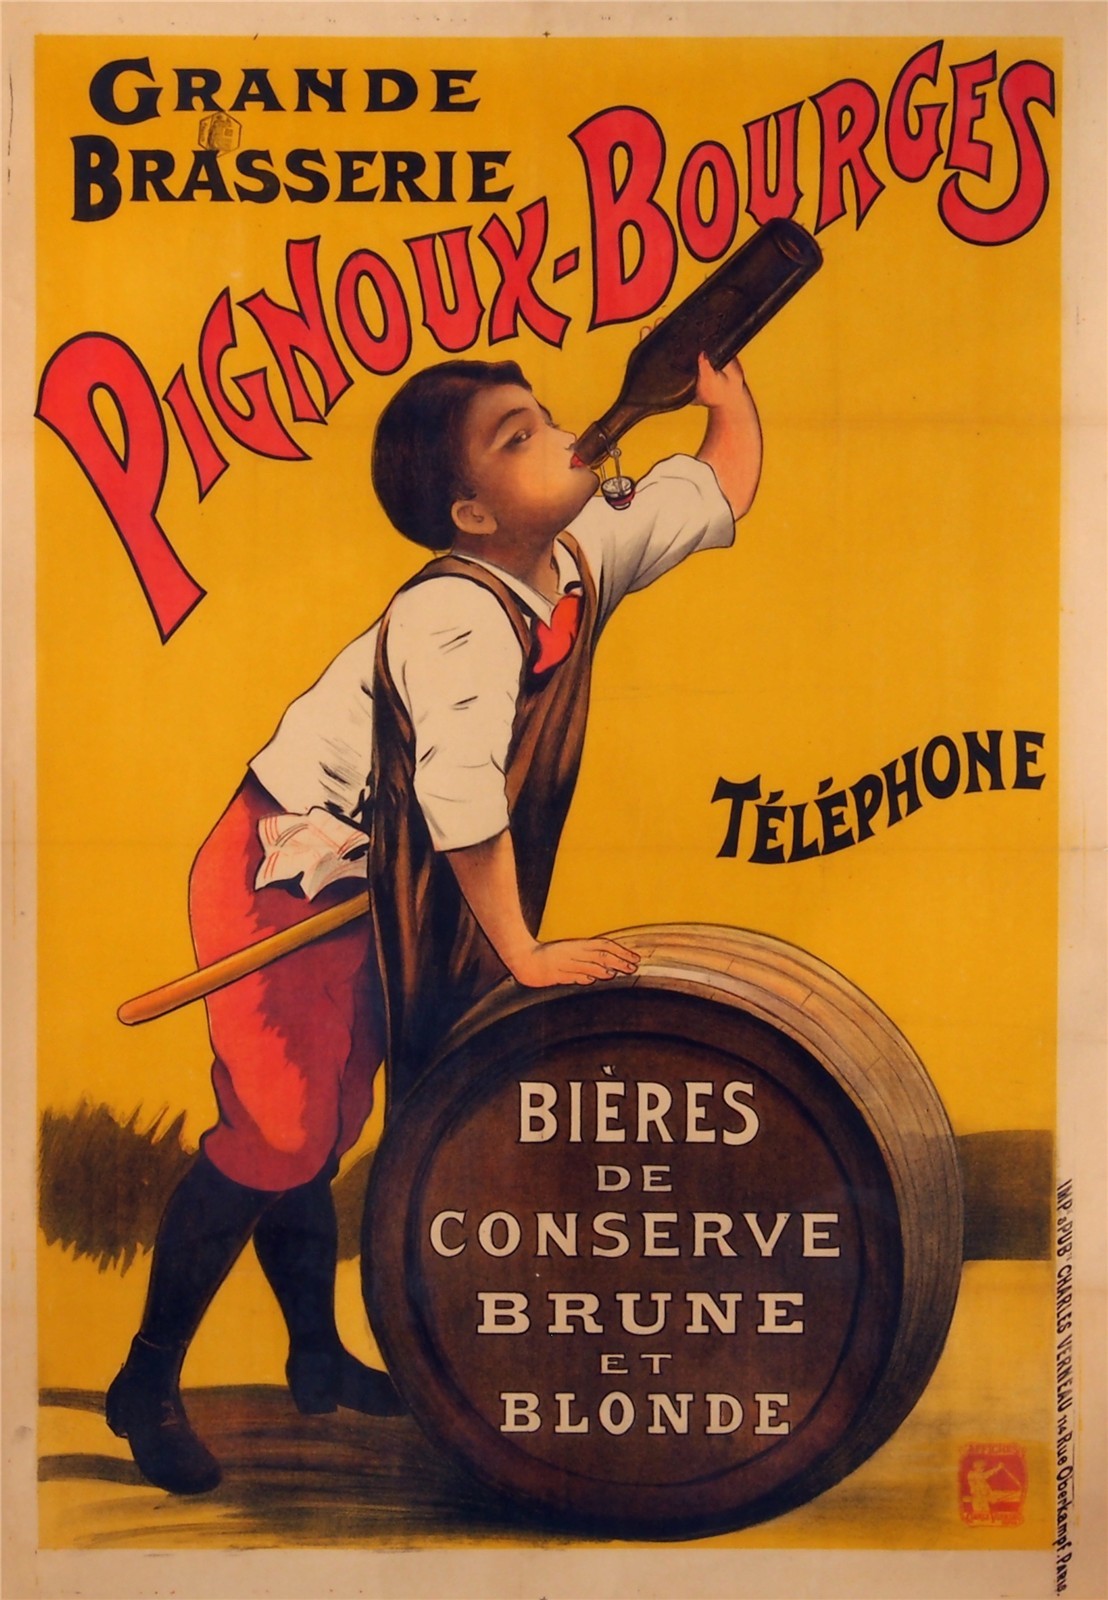 Miller beer advertising posters